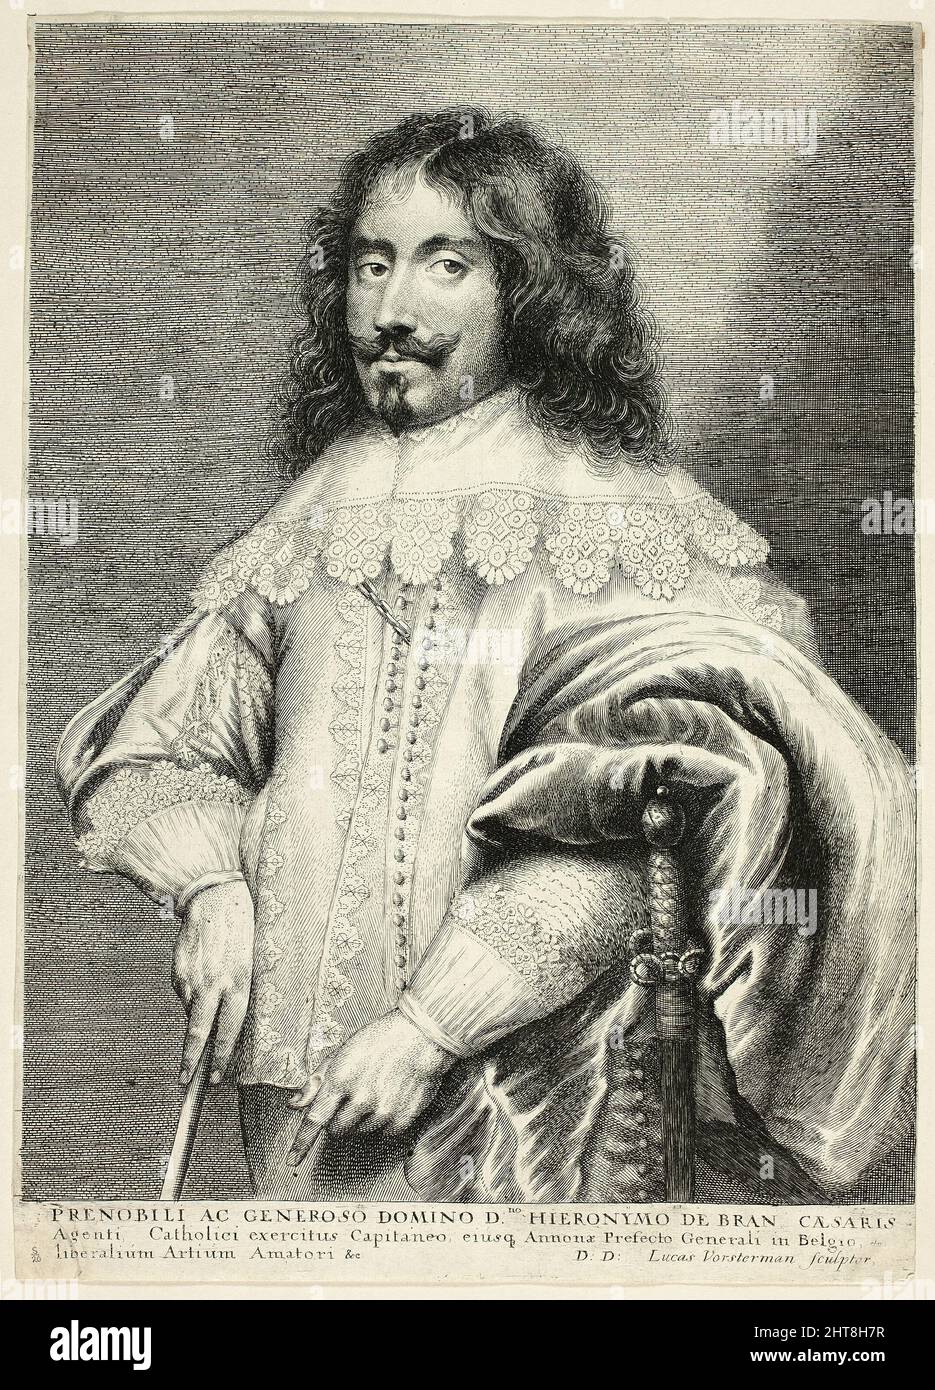 Jeronimo de Bran, c.. 1615 - 75. Foto Stock